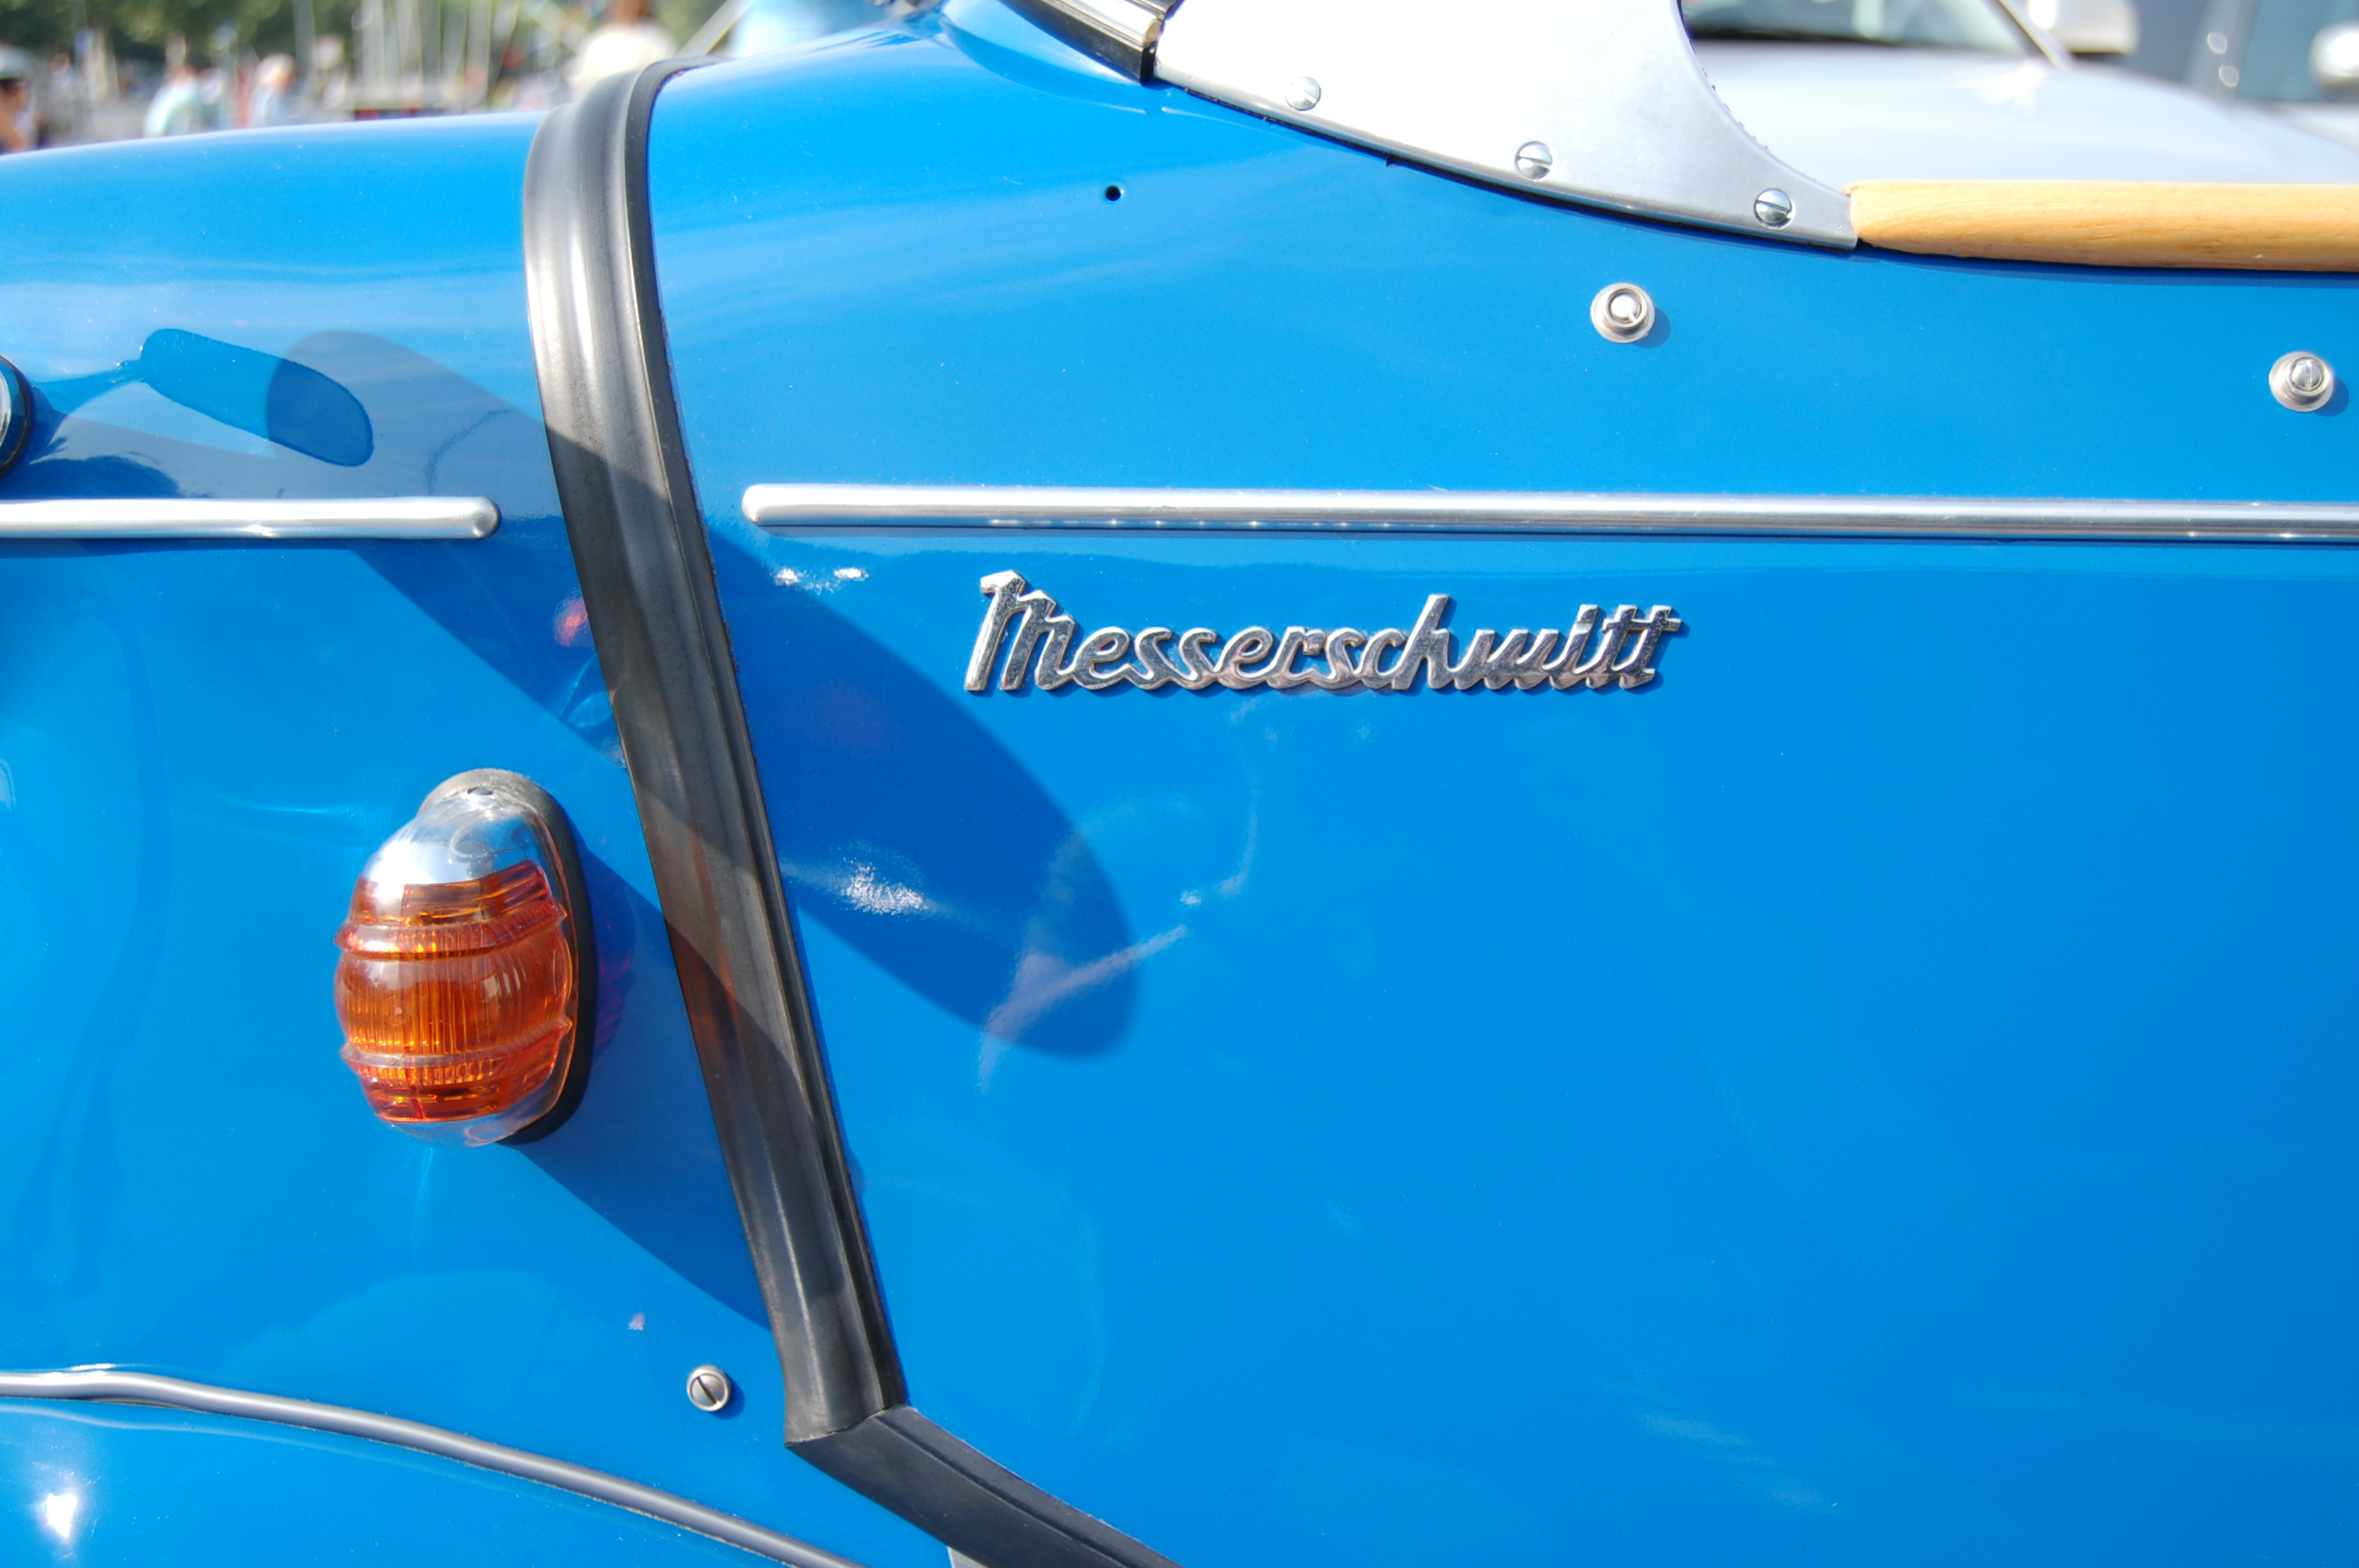 Messerschmitt Geneva 761